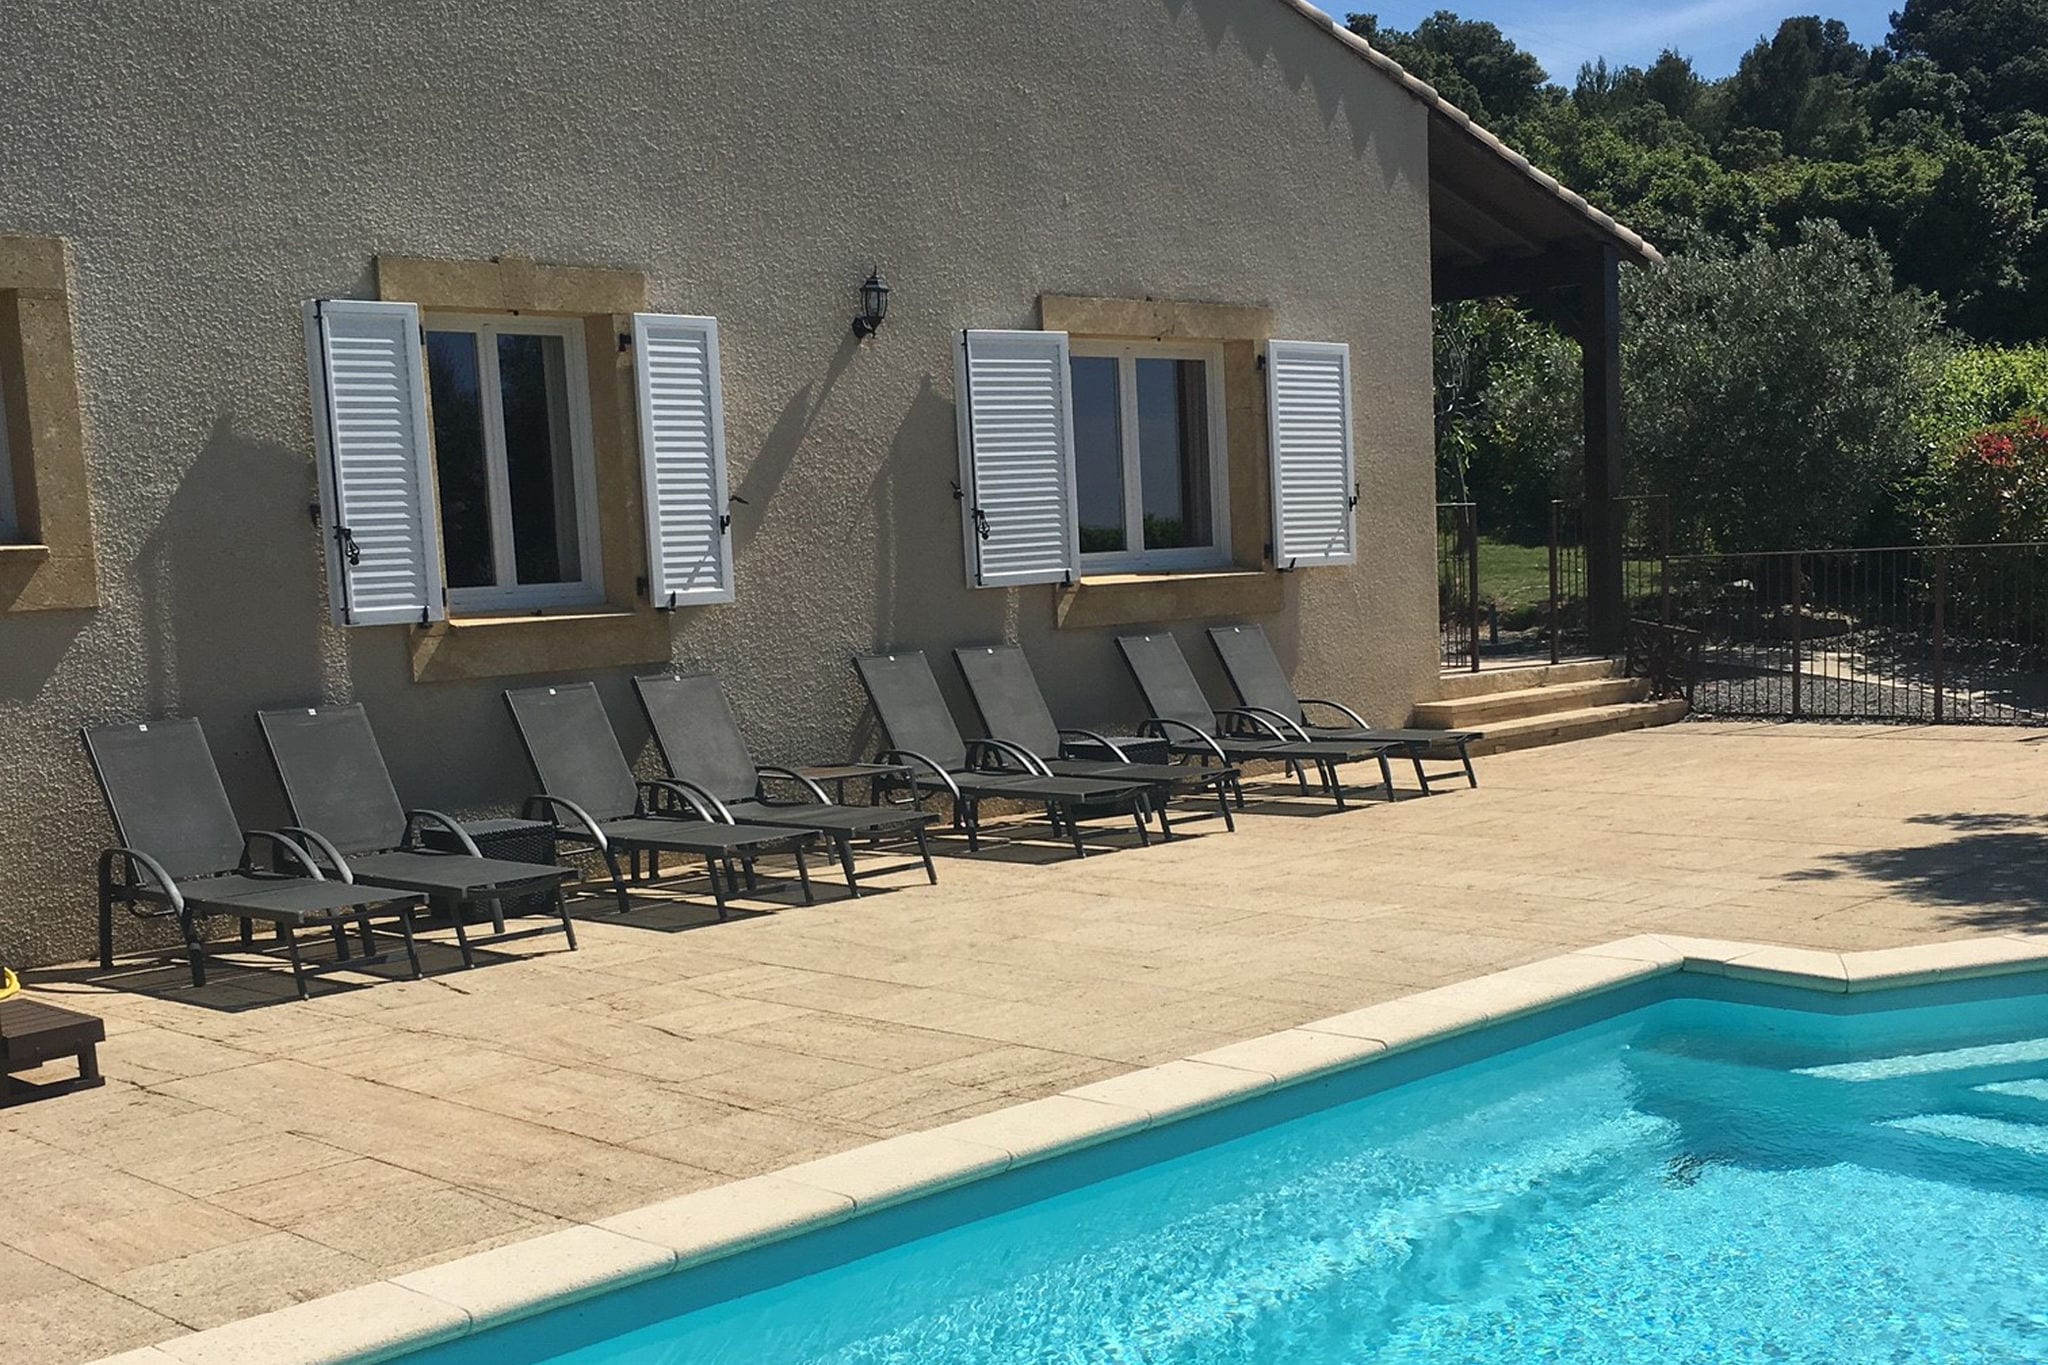 Vrijstaande villa in Zuid-Frankrijk met een verwarmd privézwembad, jacuzzi, NL TV, Airco, Wifi